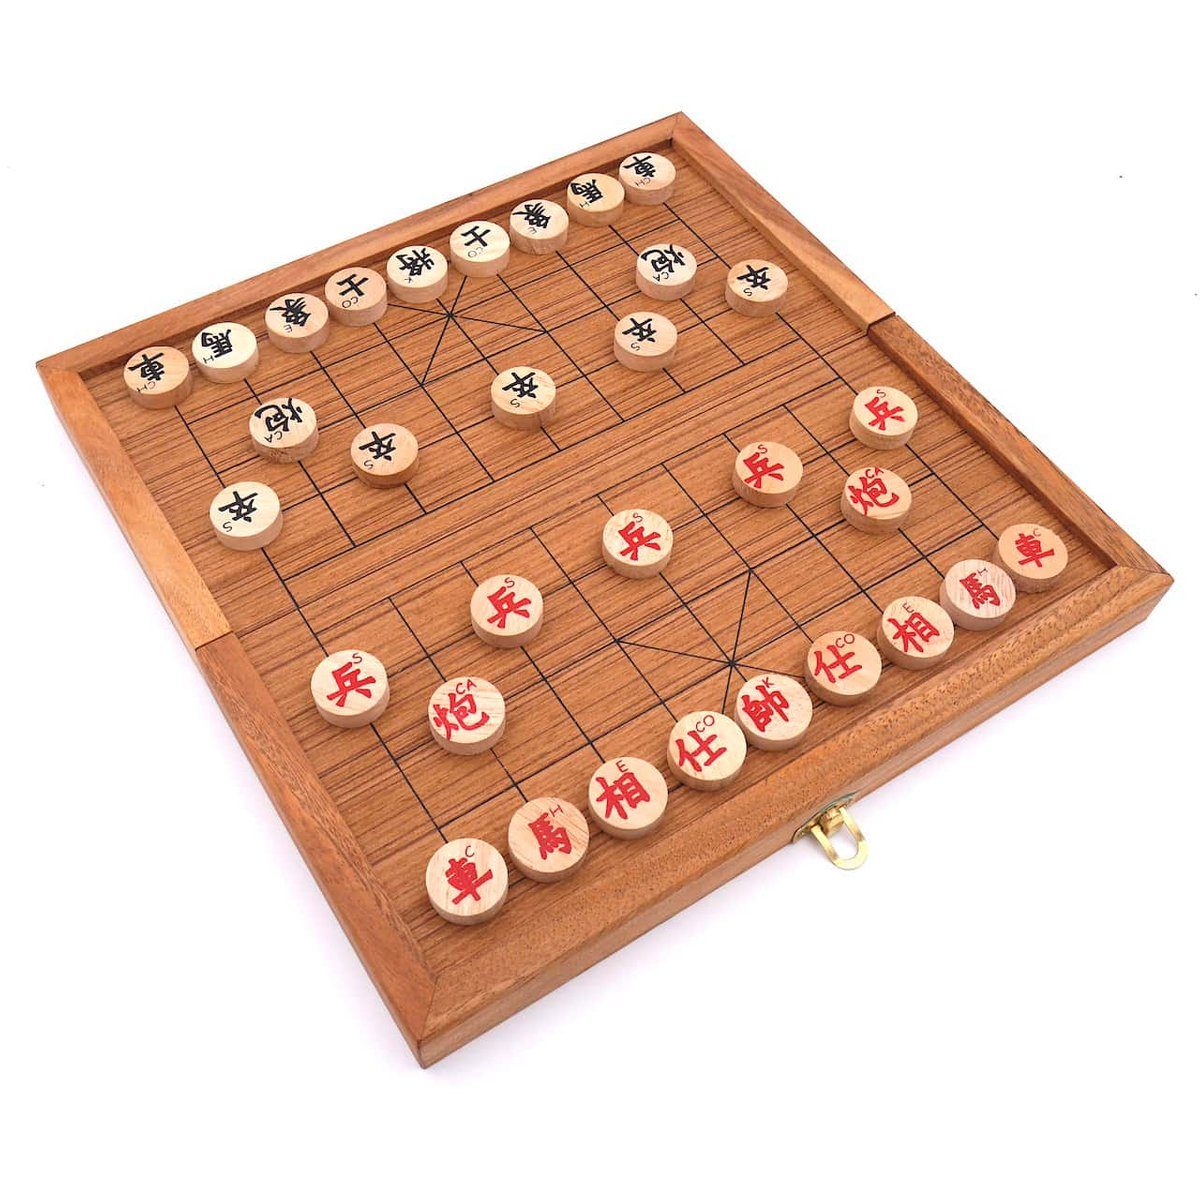 ROMBOL Denkspiele Spiel, Strategiespiel Xiangqi - chinesisches Schachspiel, Set mit originalen Holzscheiben, Holzspiel